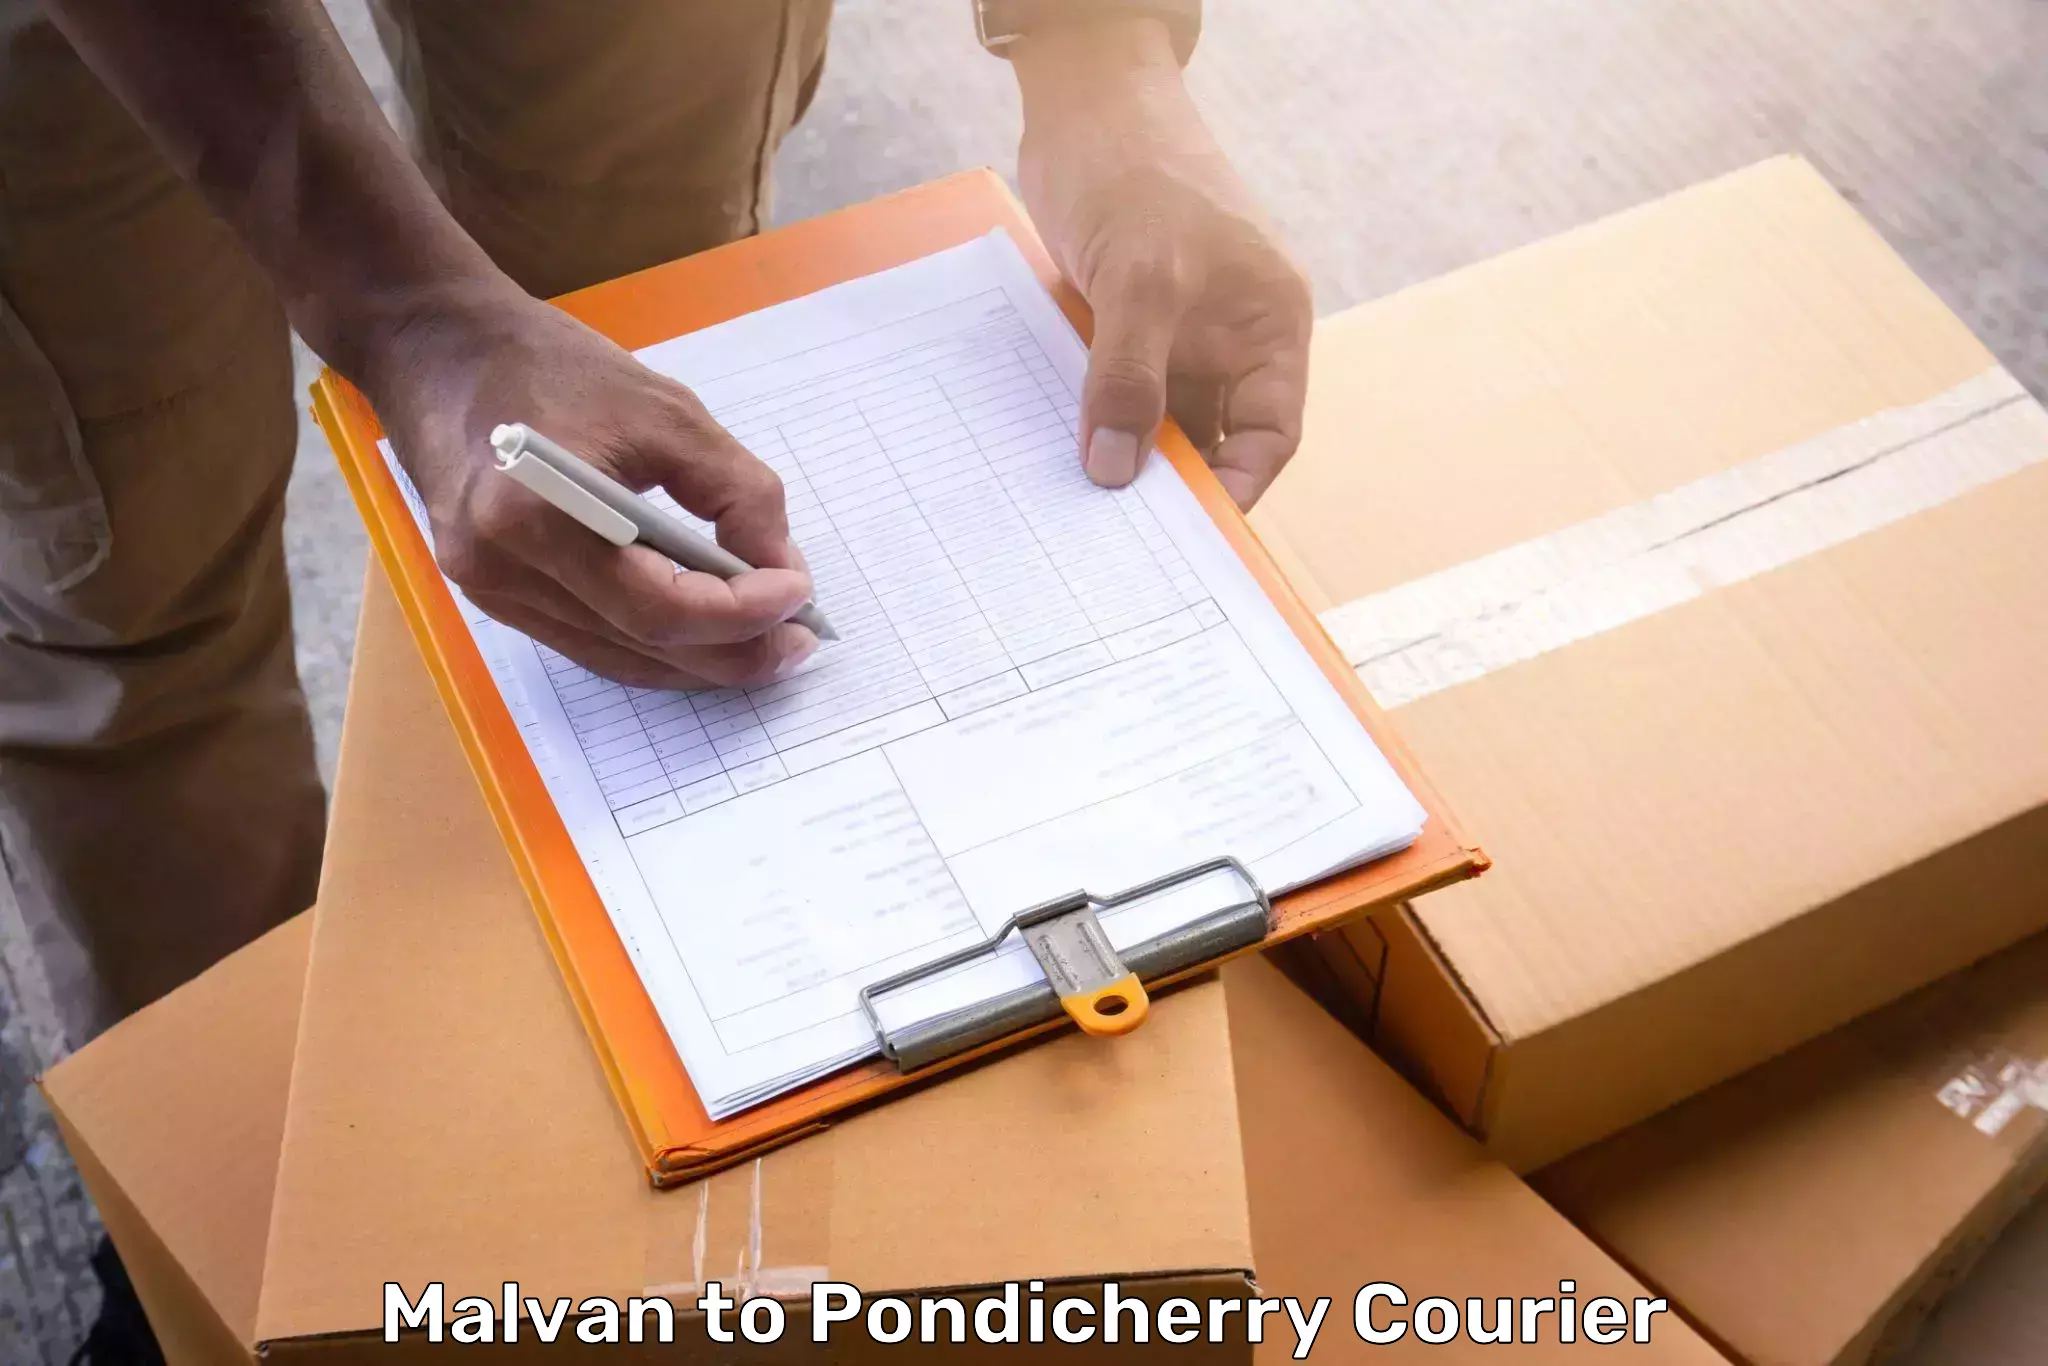 Baggage transport coordination Malvan to Pondicherry